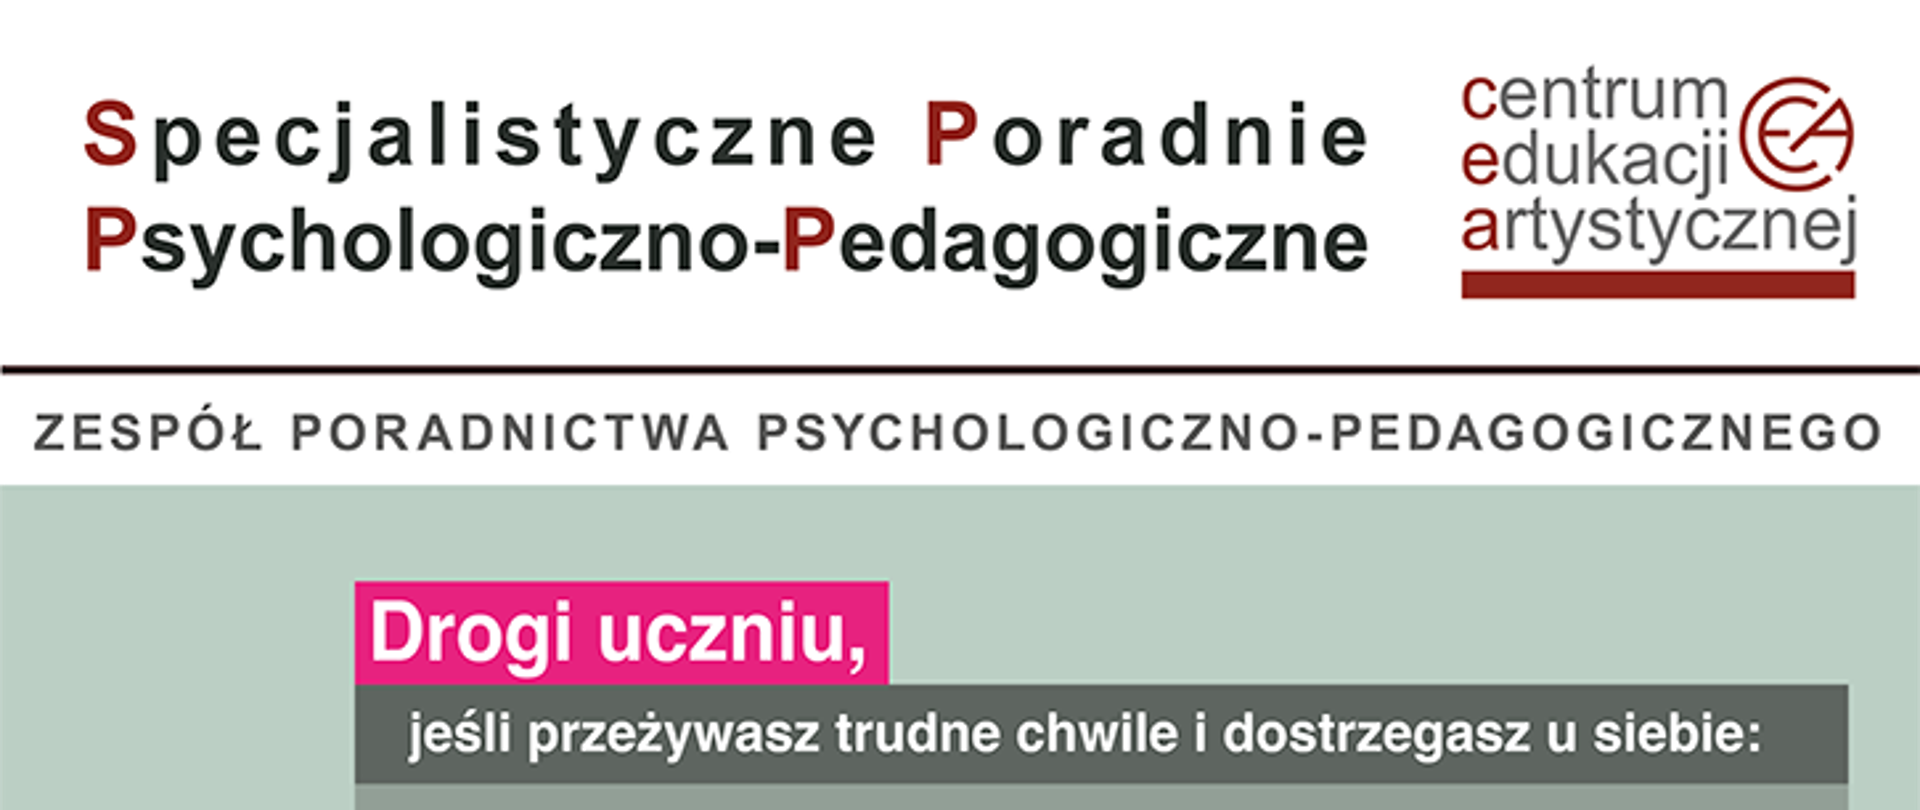 Plakat przedstawiający ofertę psychologiczno-pedagogiczną dla uczniów.